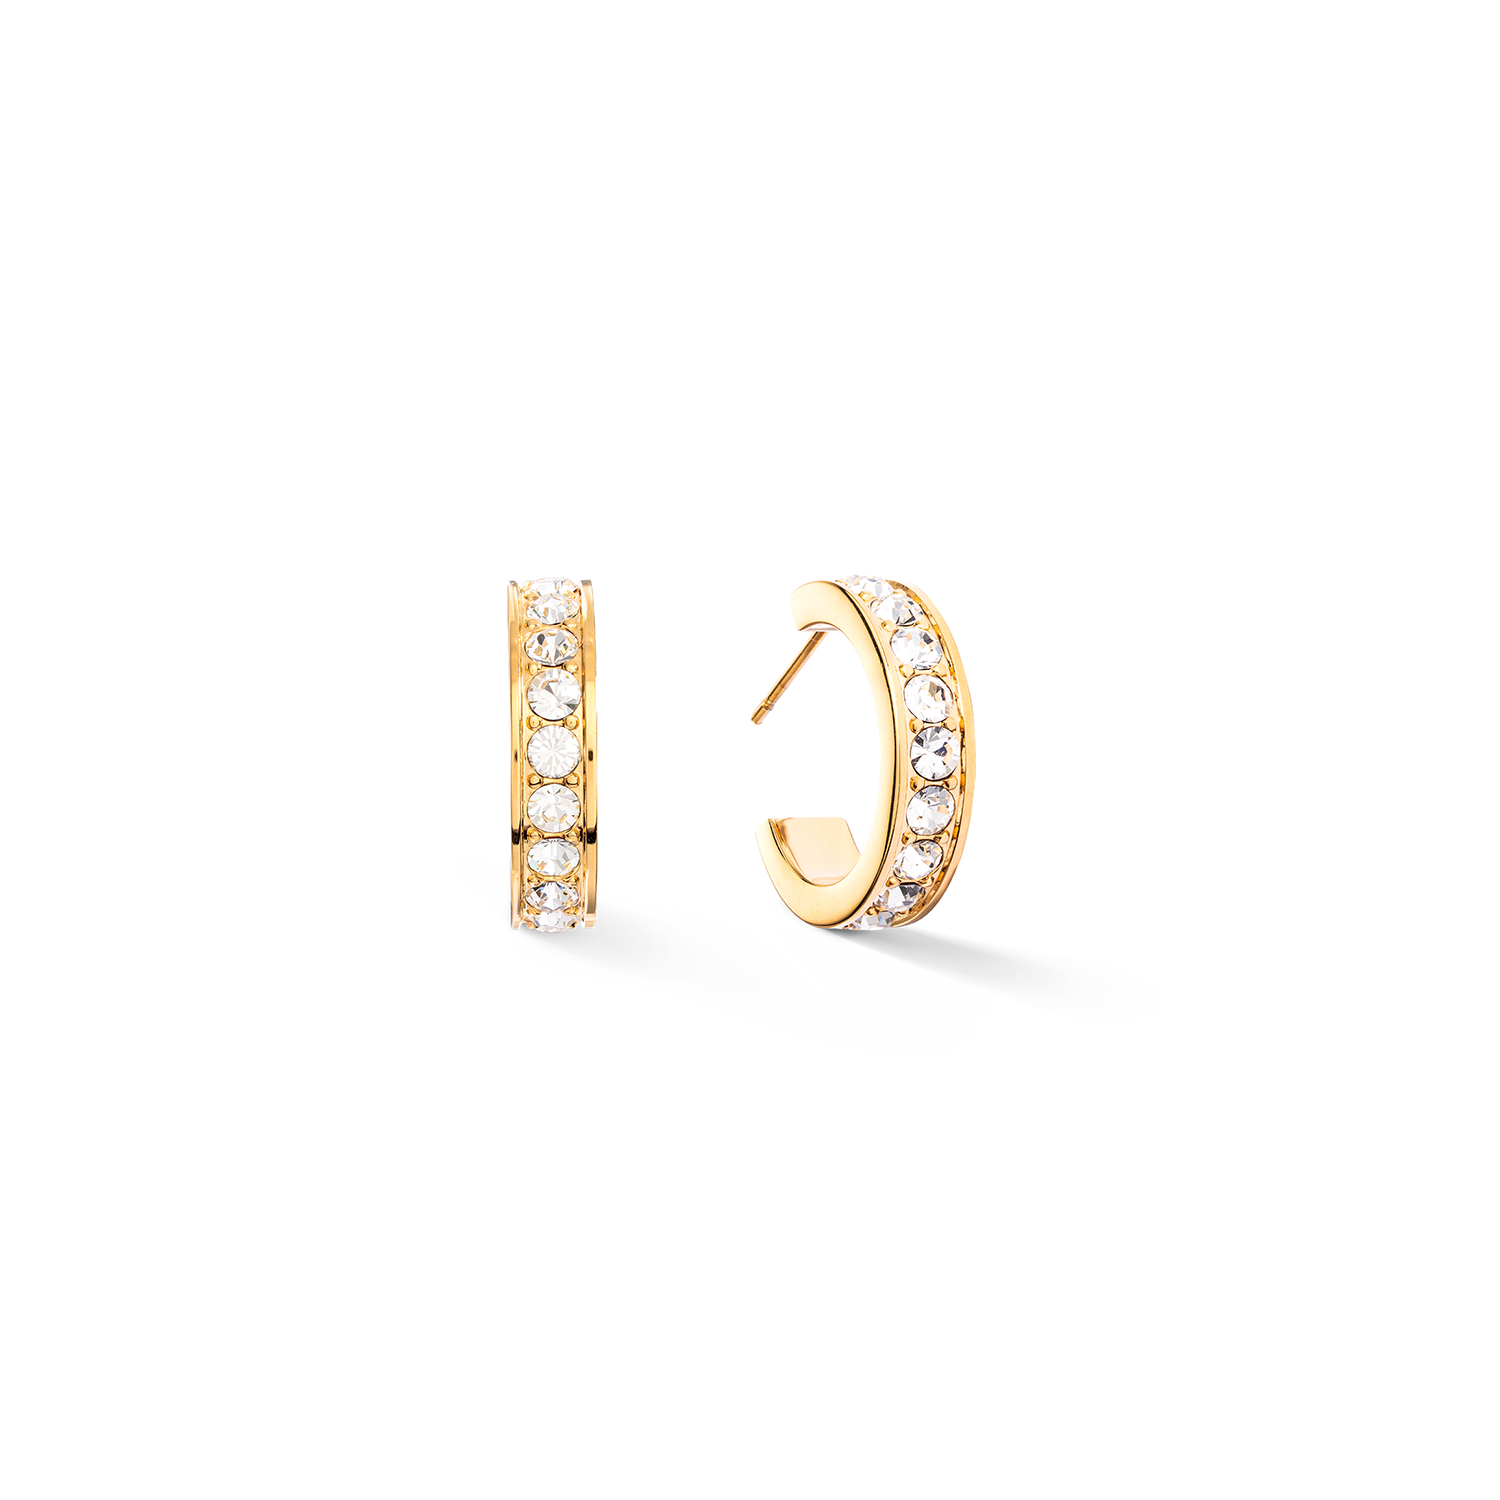 Hoop Wide Gold & Crystal Pavé Earrings 0131/21_1816